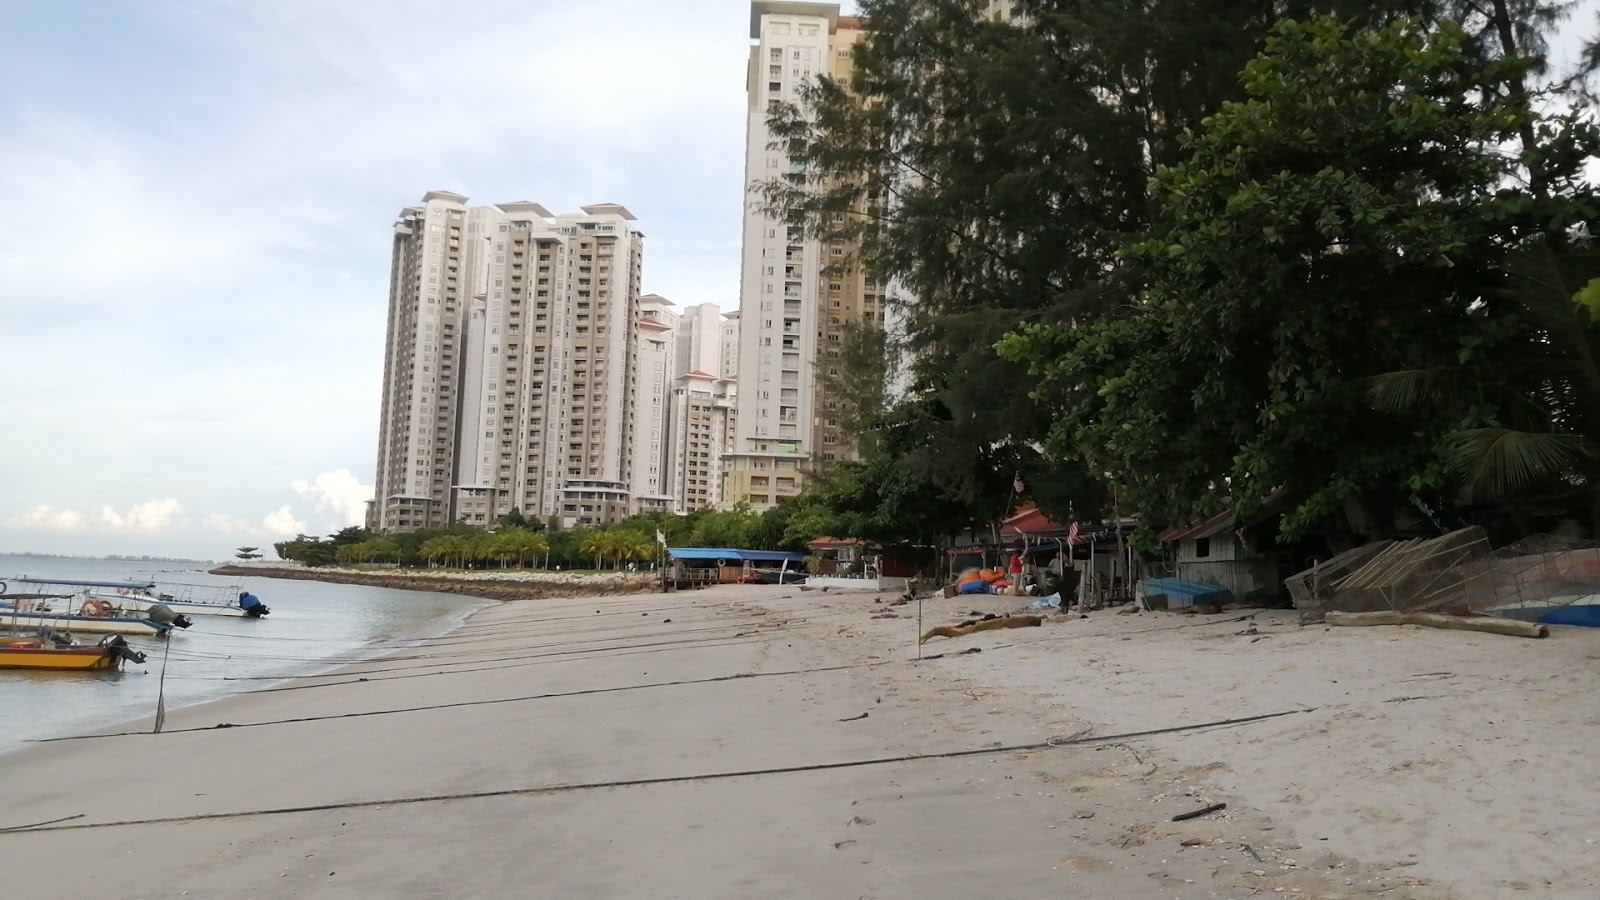 Foto de Tanjung Tokong Beach com alto nível de limpeza